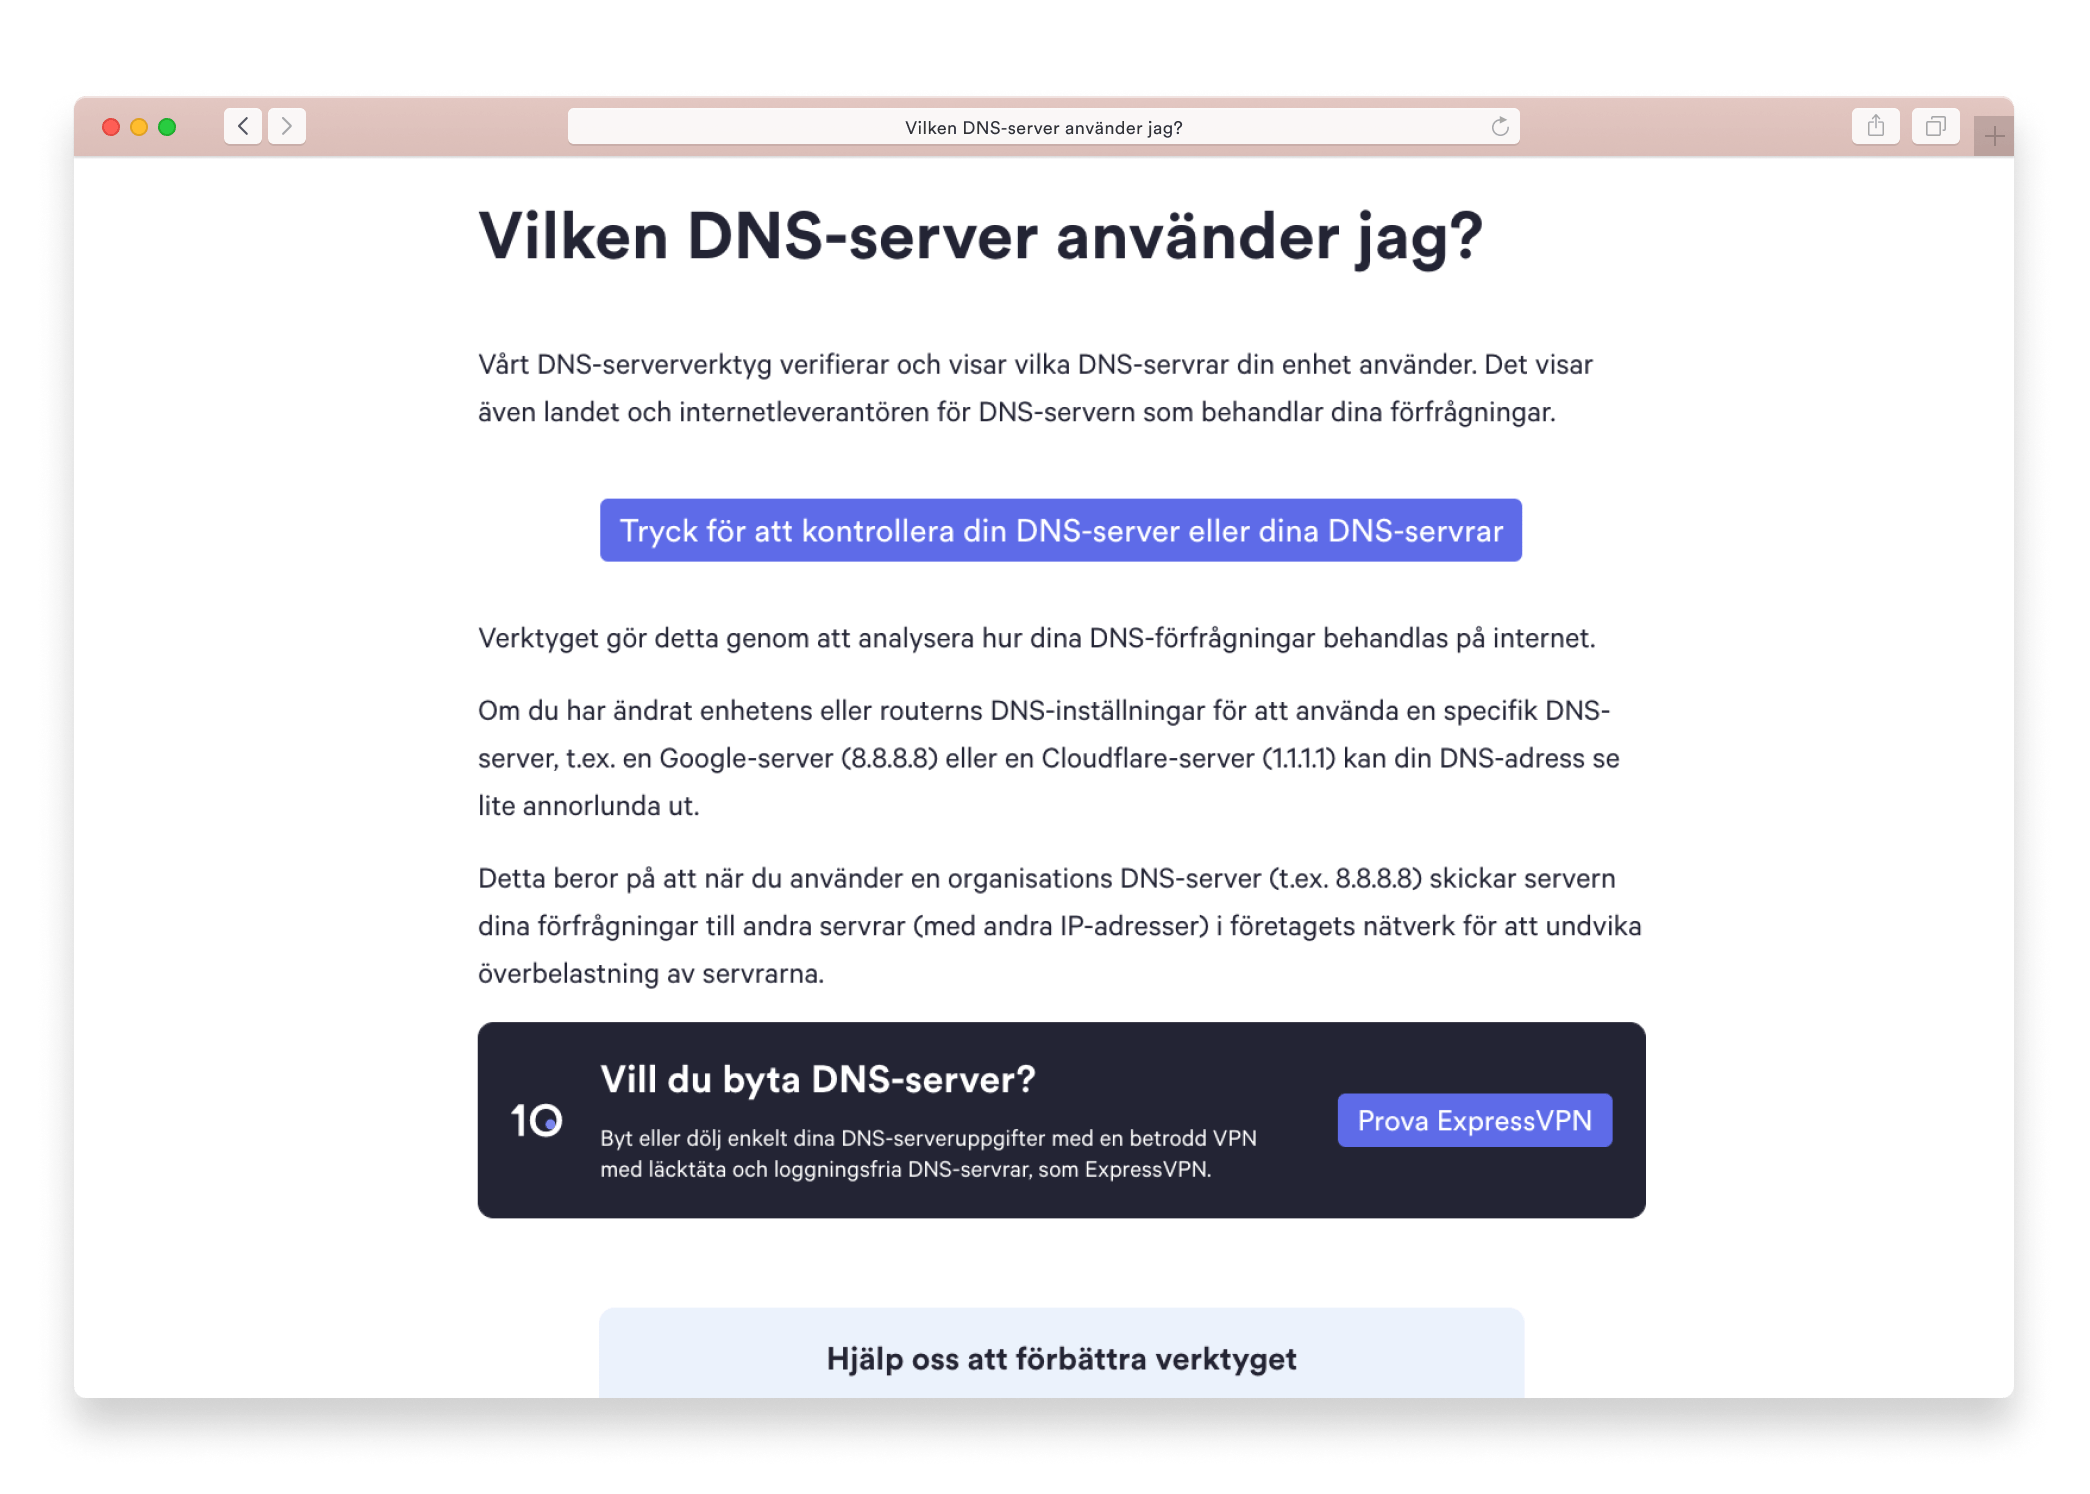 Vilken DNS-server använder jag?